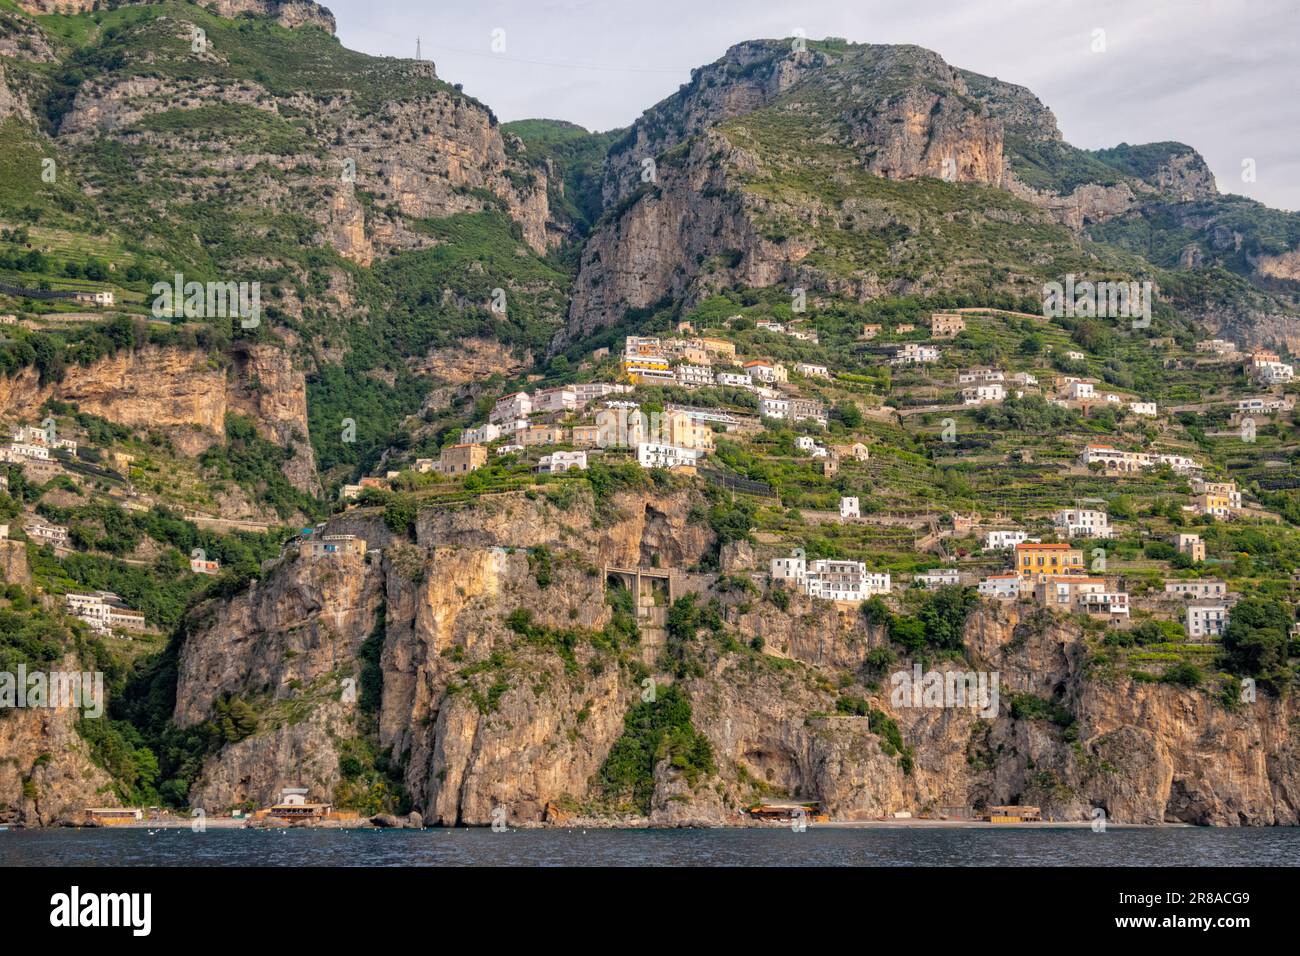 Vista offshore della costiera amalfitana nei pressi della città di Amalfi, Salerno, Campanis, Italia Foto Stock